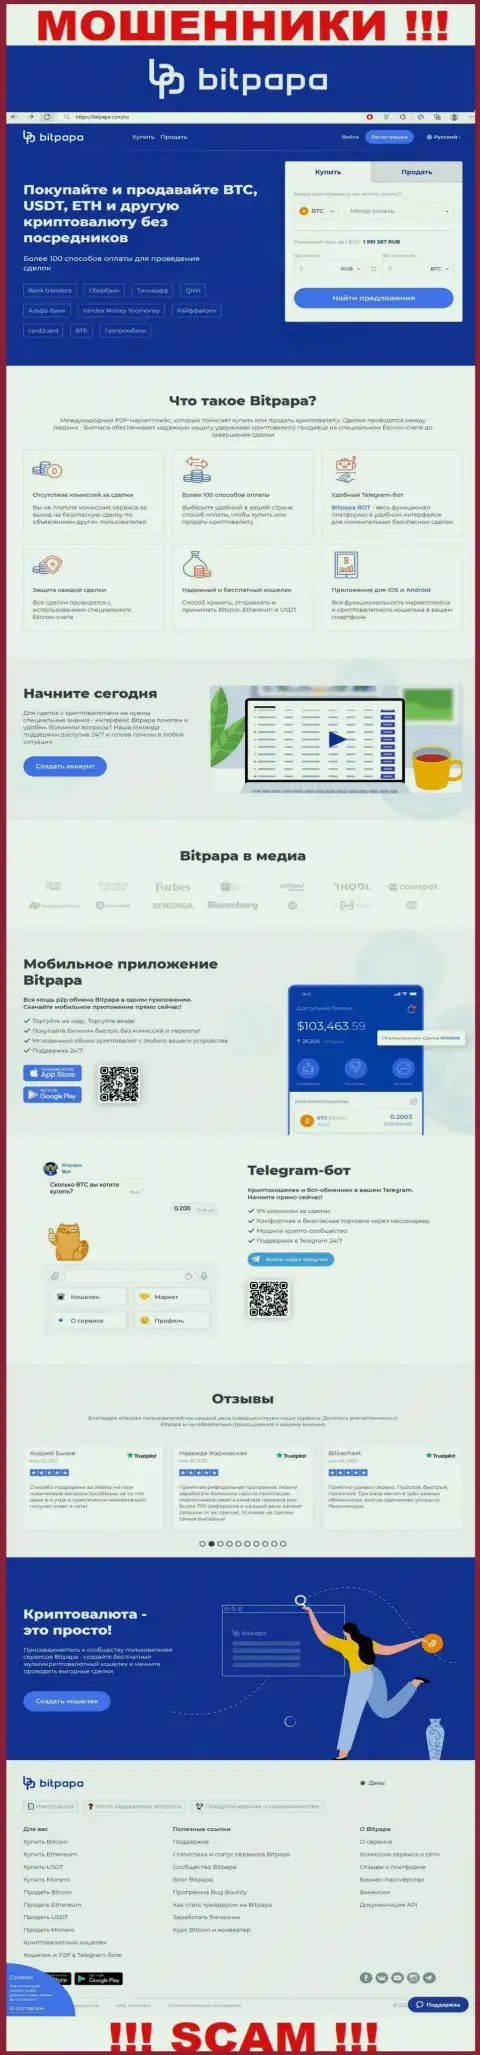 Лживая информация от организации BitPapa на официальном сайте мошенников